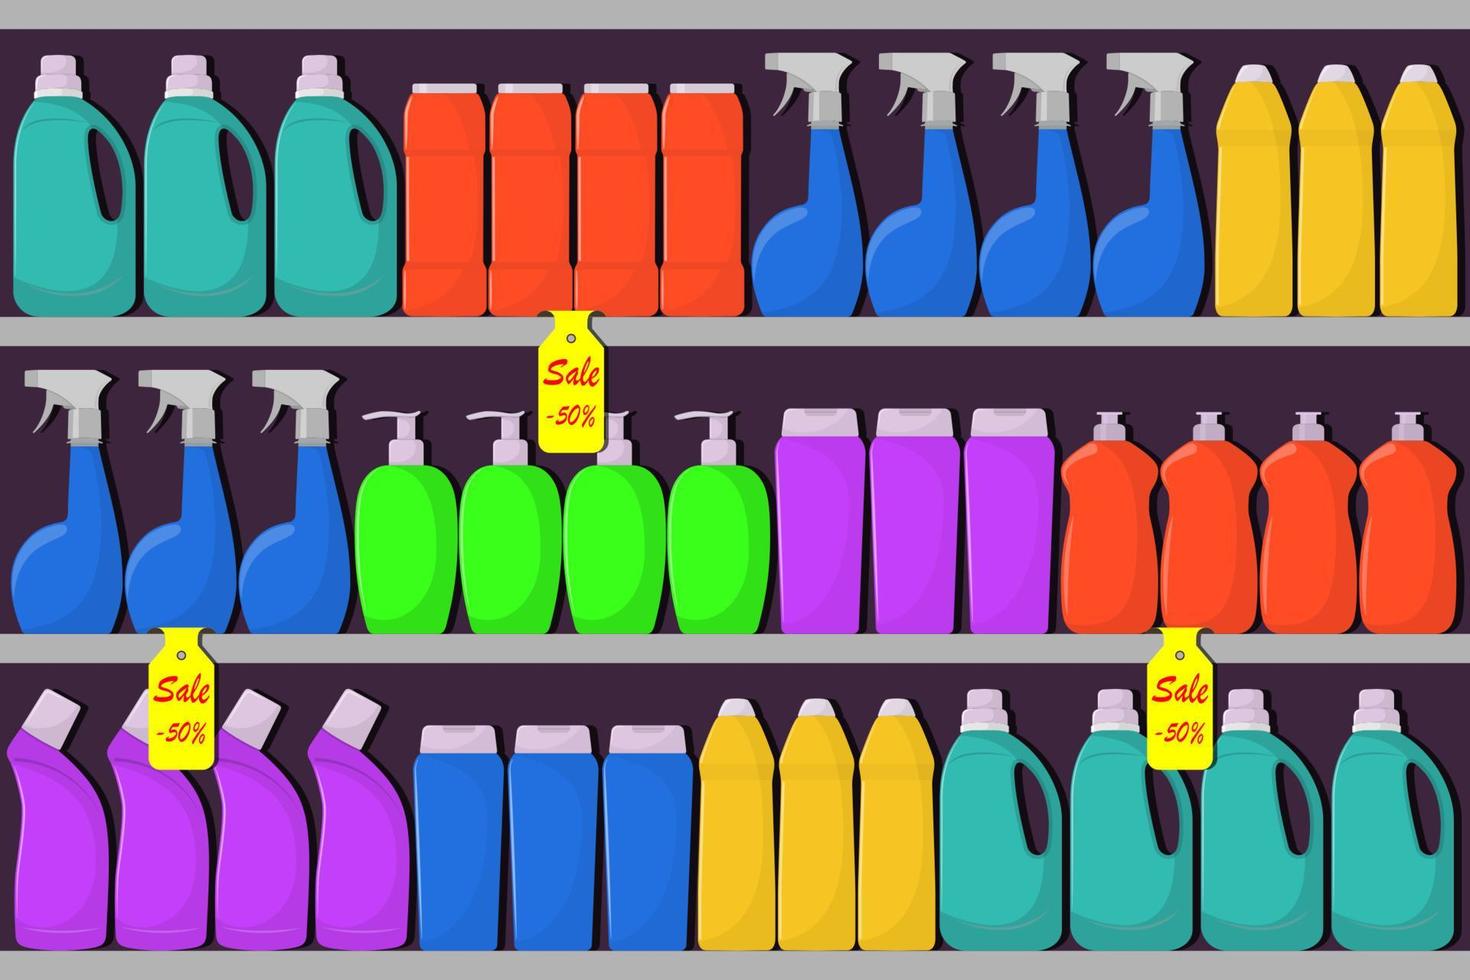 prateleiras de supermercados com garrafas de detergente, sabão em pó, detergente em pó, frasco de spray, um meio para lavar a louça. venda, descontos. ilustração vetorial. vetor